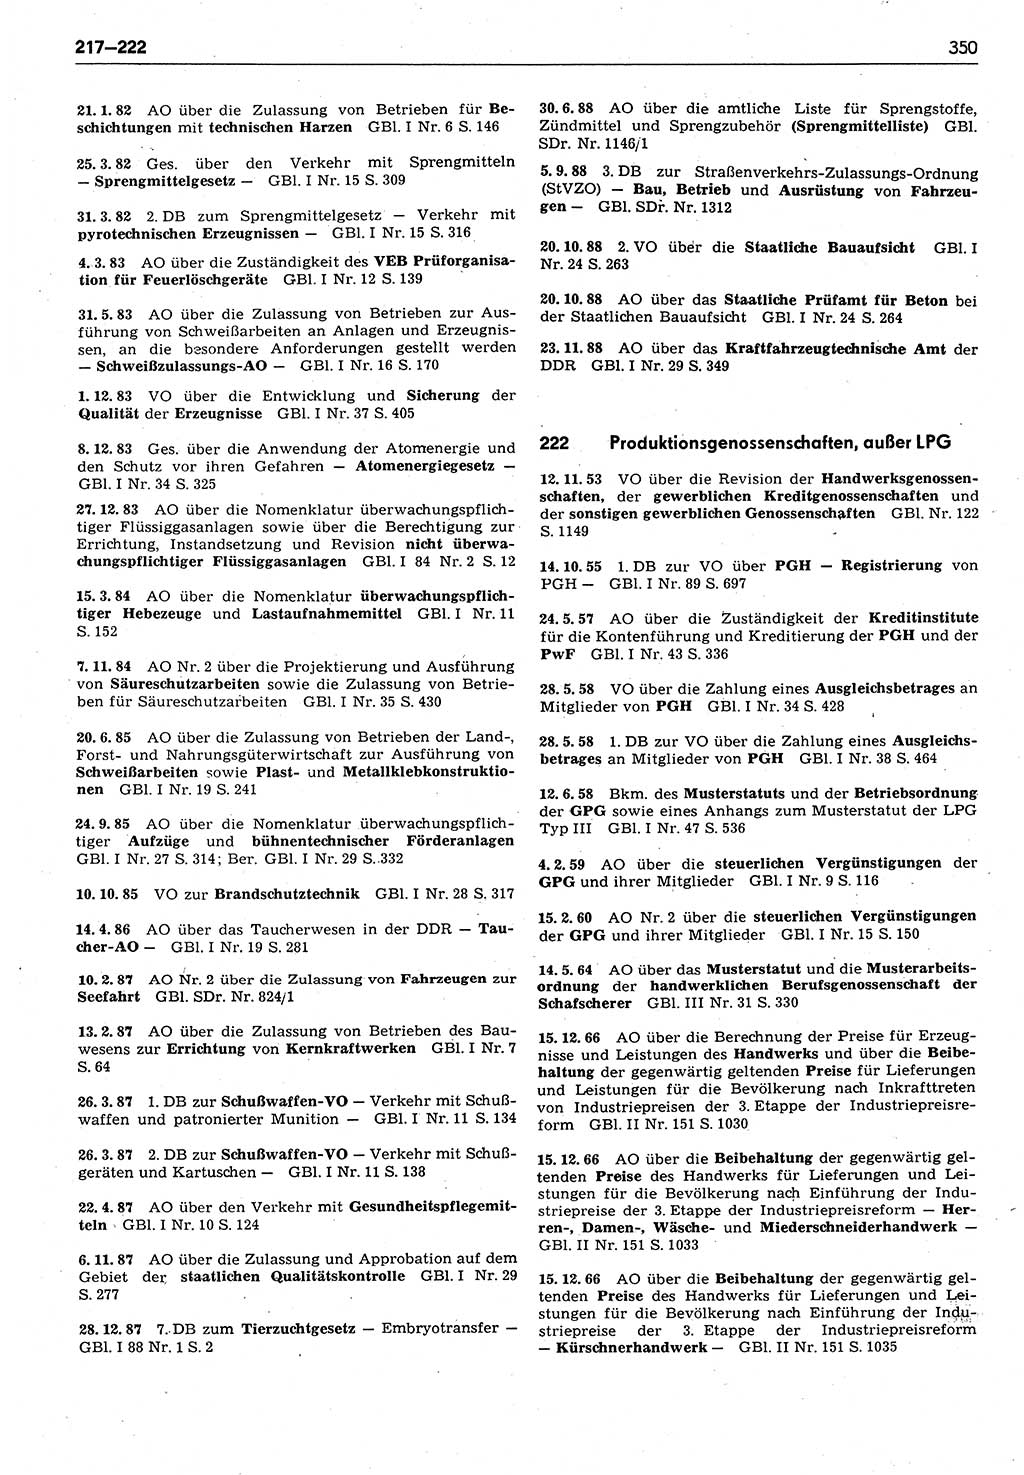 Das geltende Recht der Deutschen Demokratischen Republik (DDR) 1949-1988, Seite 350 (Gelt. R. DDR 1949-1988, S. 350)